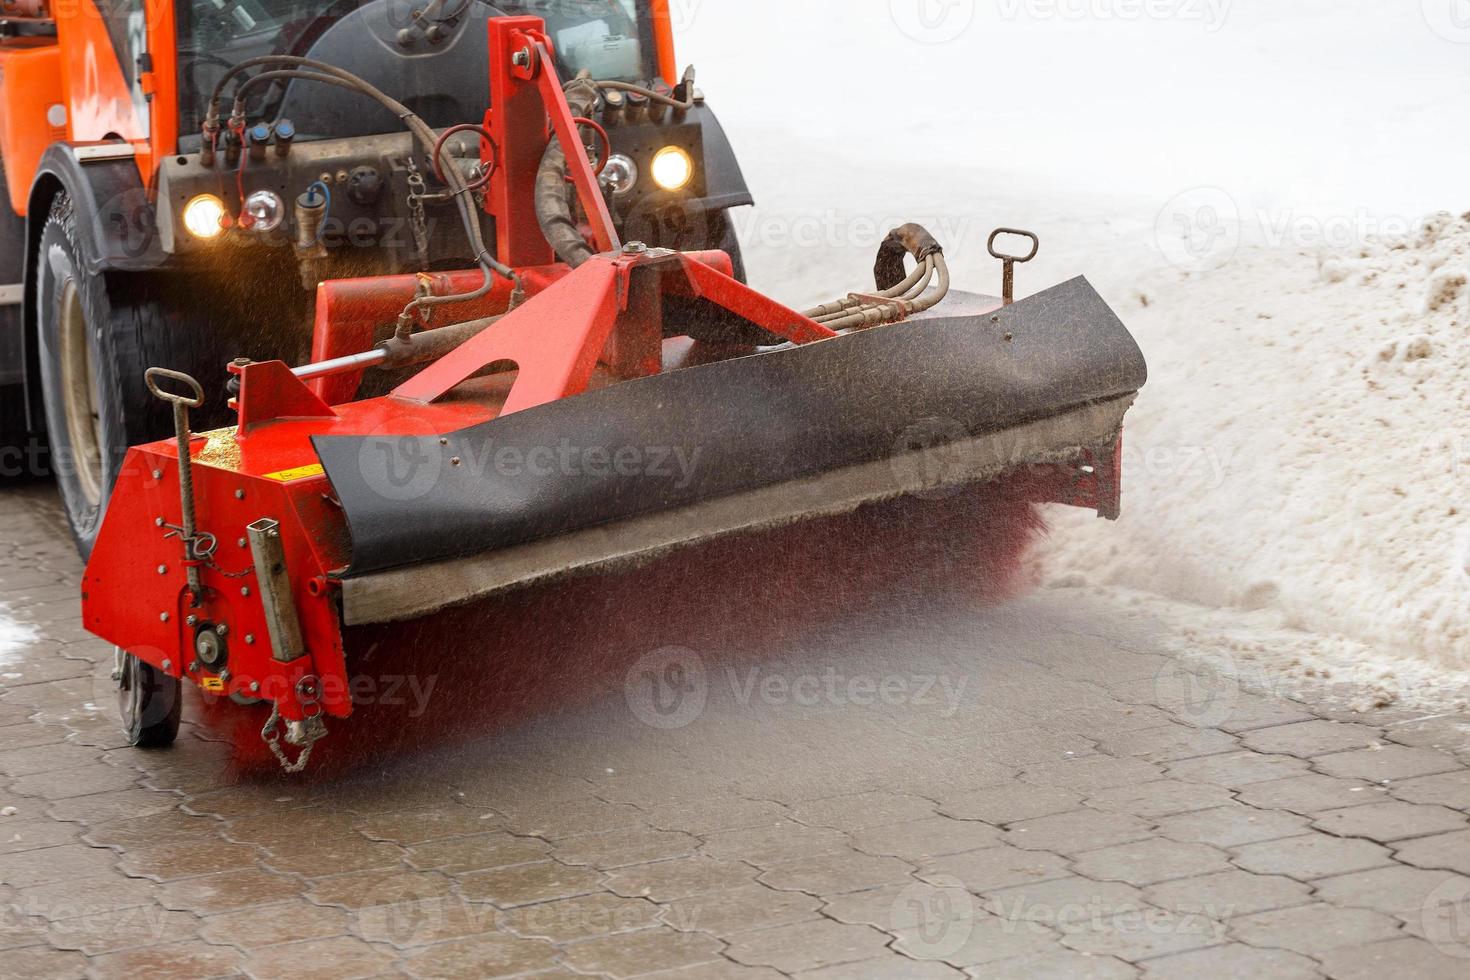 limpeza de neve. trator de remoção de neve limpando a neve do pavimento com escova giratória redonda especial, foto